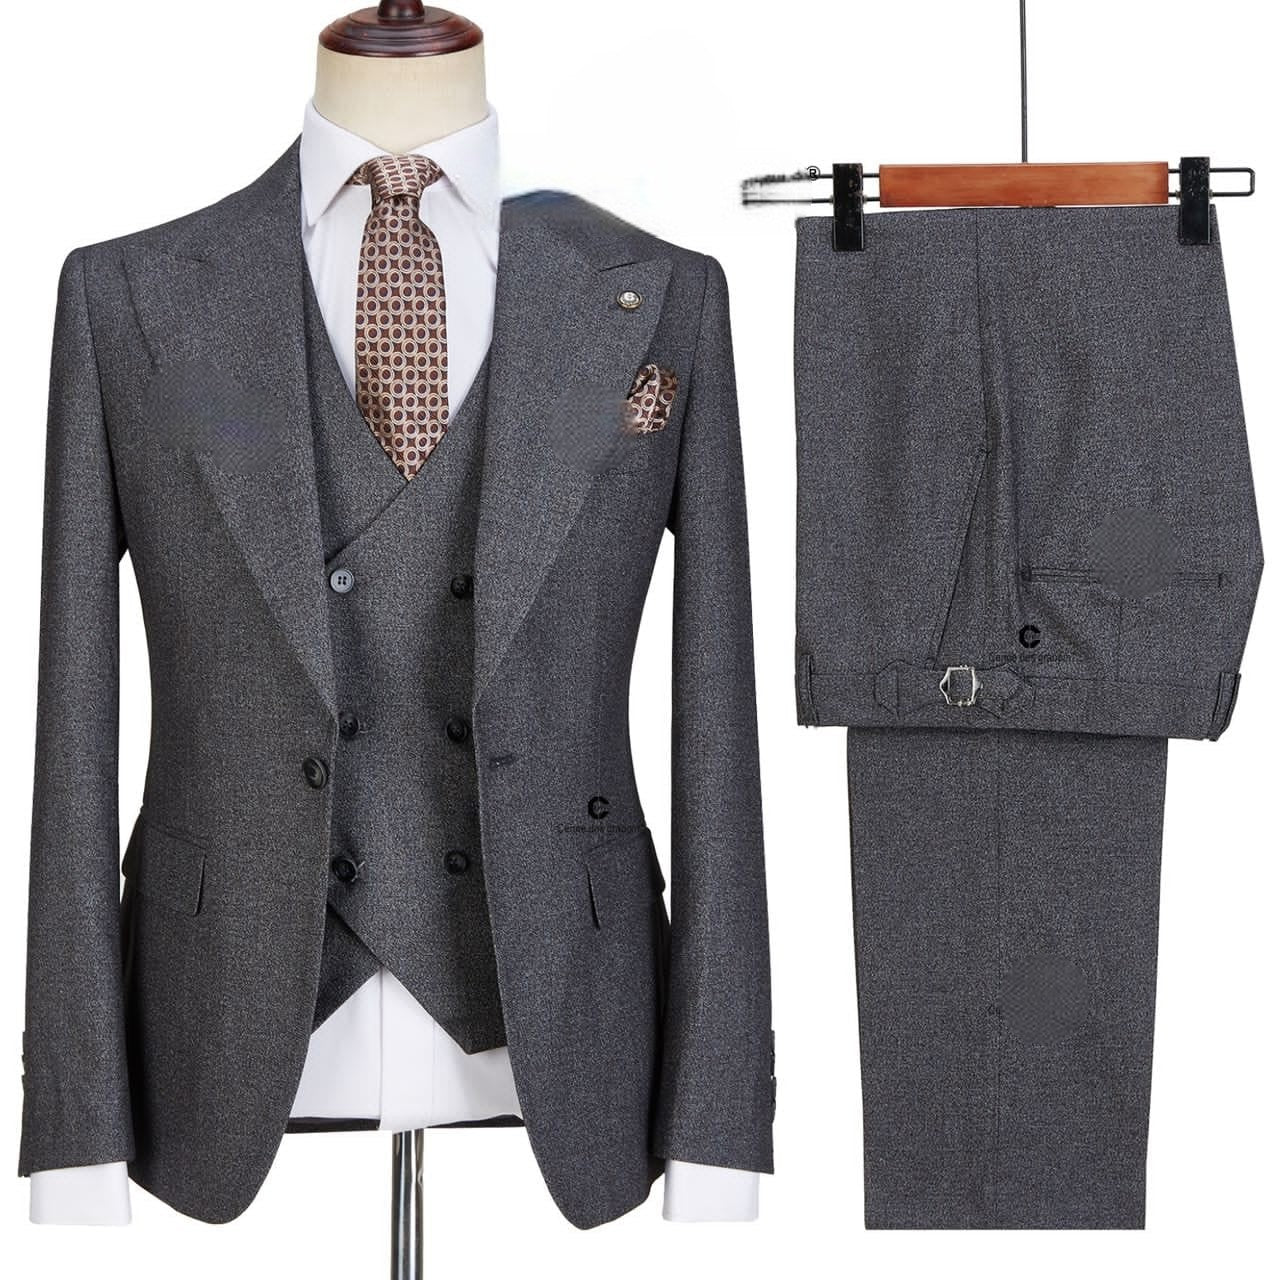 Cennes 100% wool Premium Quality 3-Piece Suit